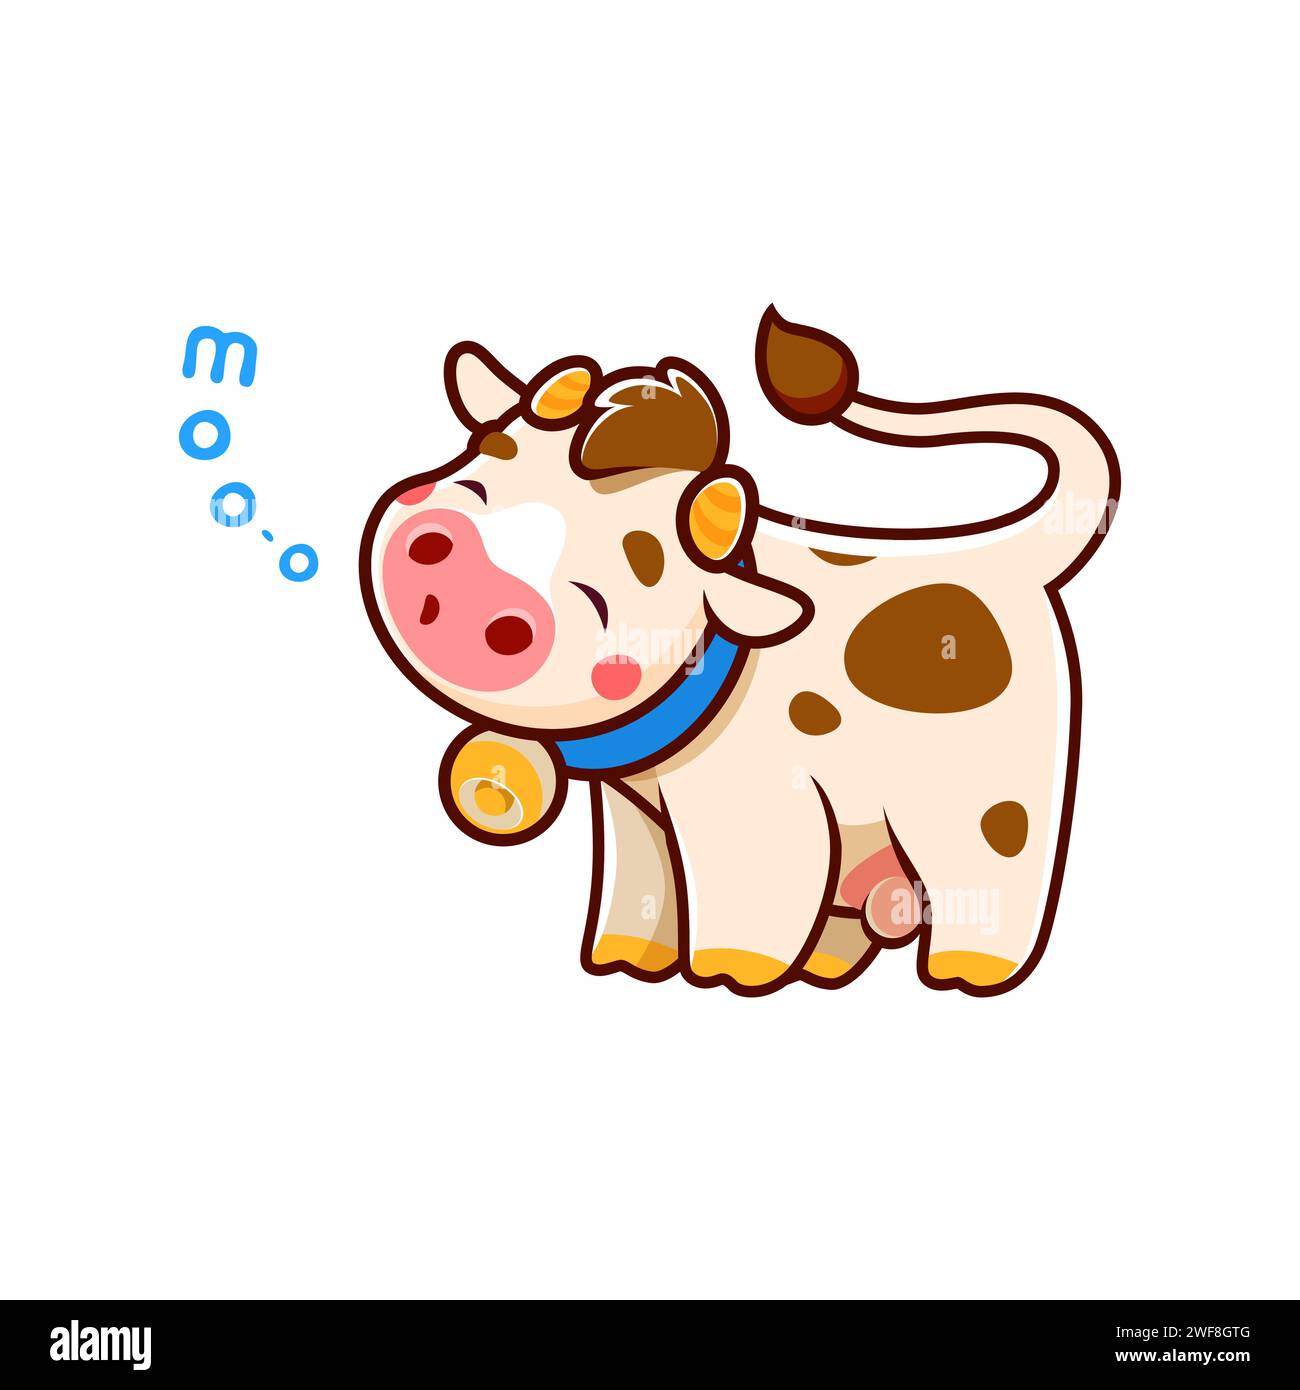 Cartoon niedliche Kuhfigur, isolierter Vektor entzückendes Bauernhoftier, kawaii Kälberparsonage mit einem herzerwärmenden Lächeln und rosa Wangen, spuckt freudig ein süßes Moo, das Herzen mit purer Niedlichkeit schmilzt Stock Vektor